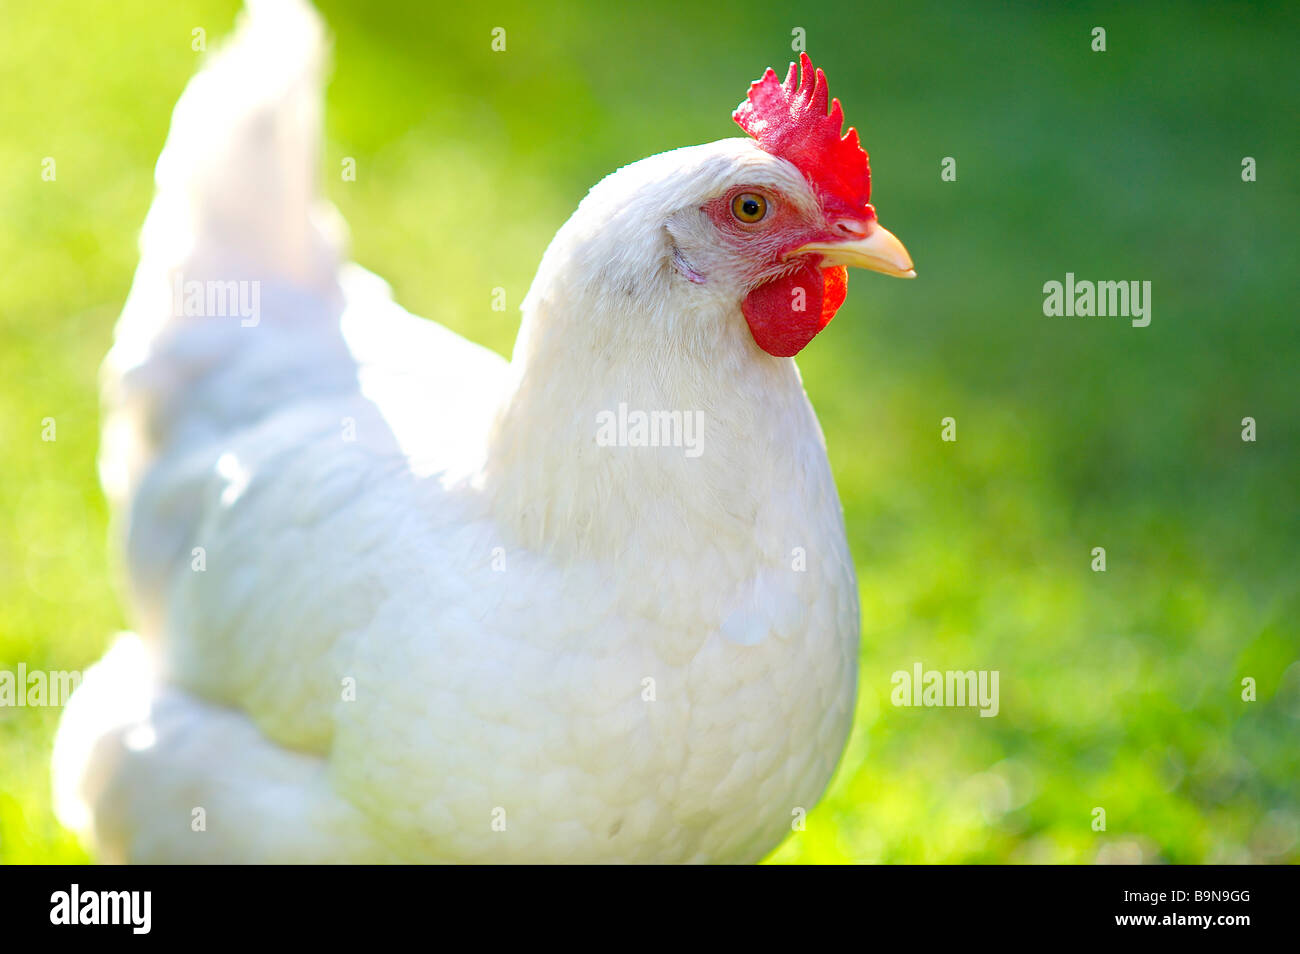 Free Range gallina blanca sobre el césped Foto de stock